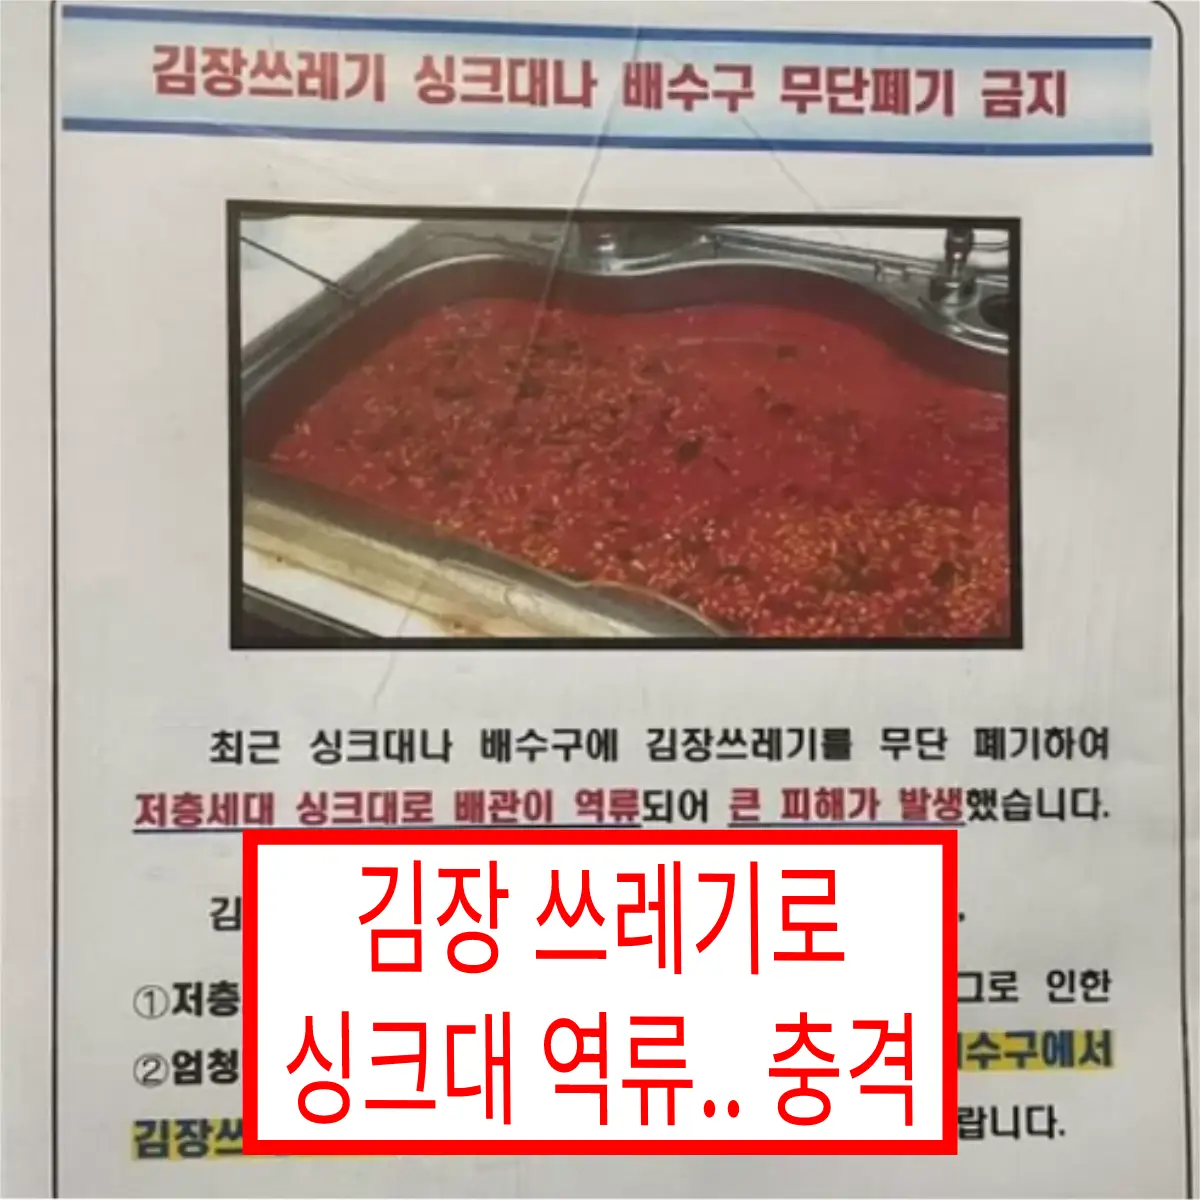 '김장 쓰레기' 무단 투기로 싱크대 역류하는 아랫집 충격적인 상황